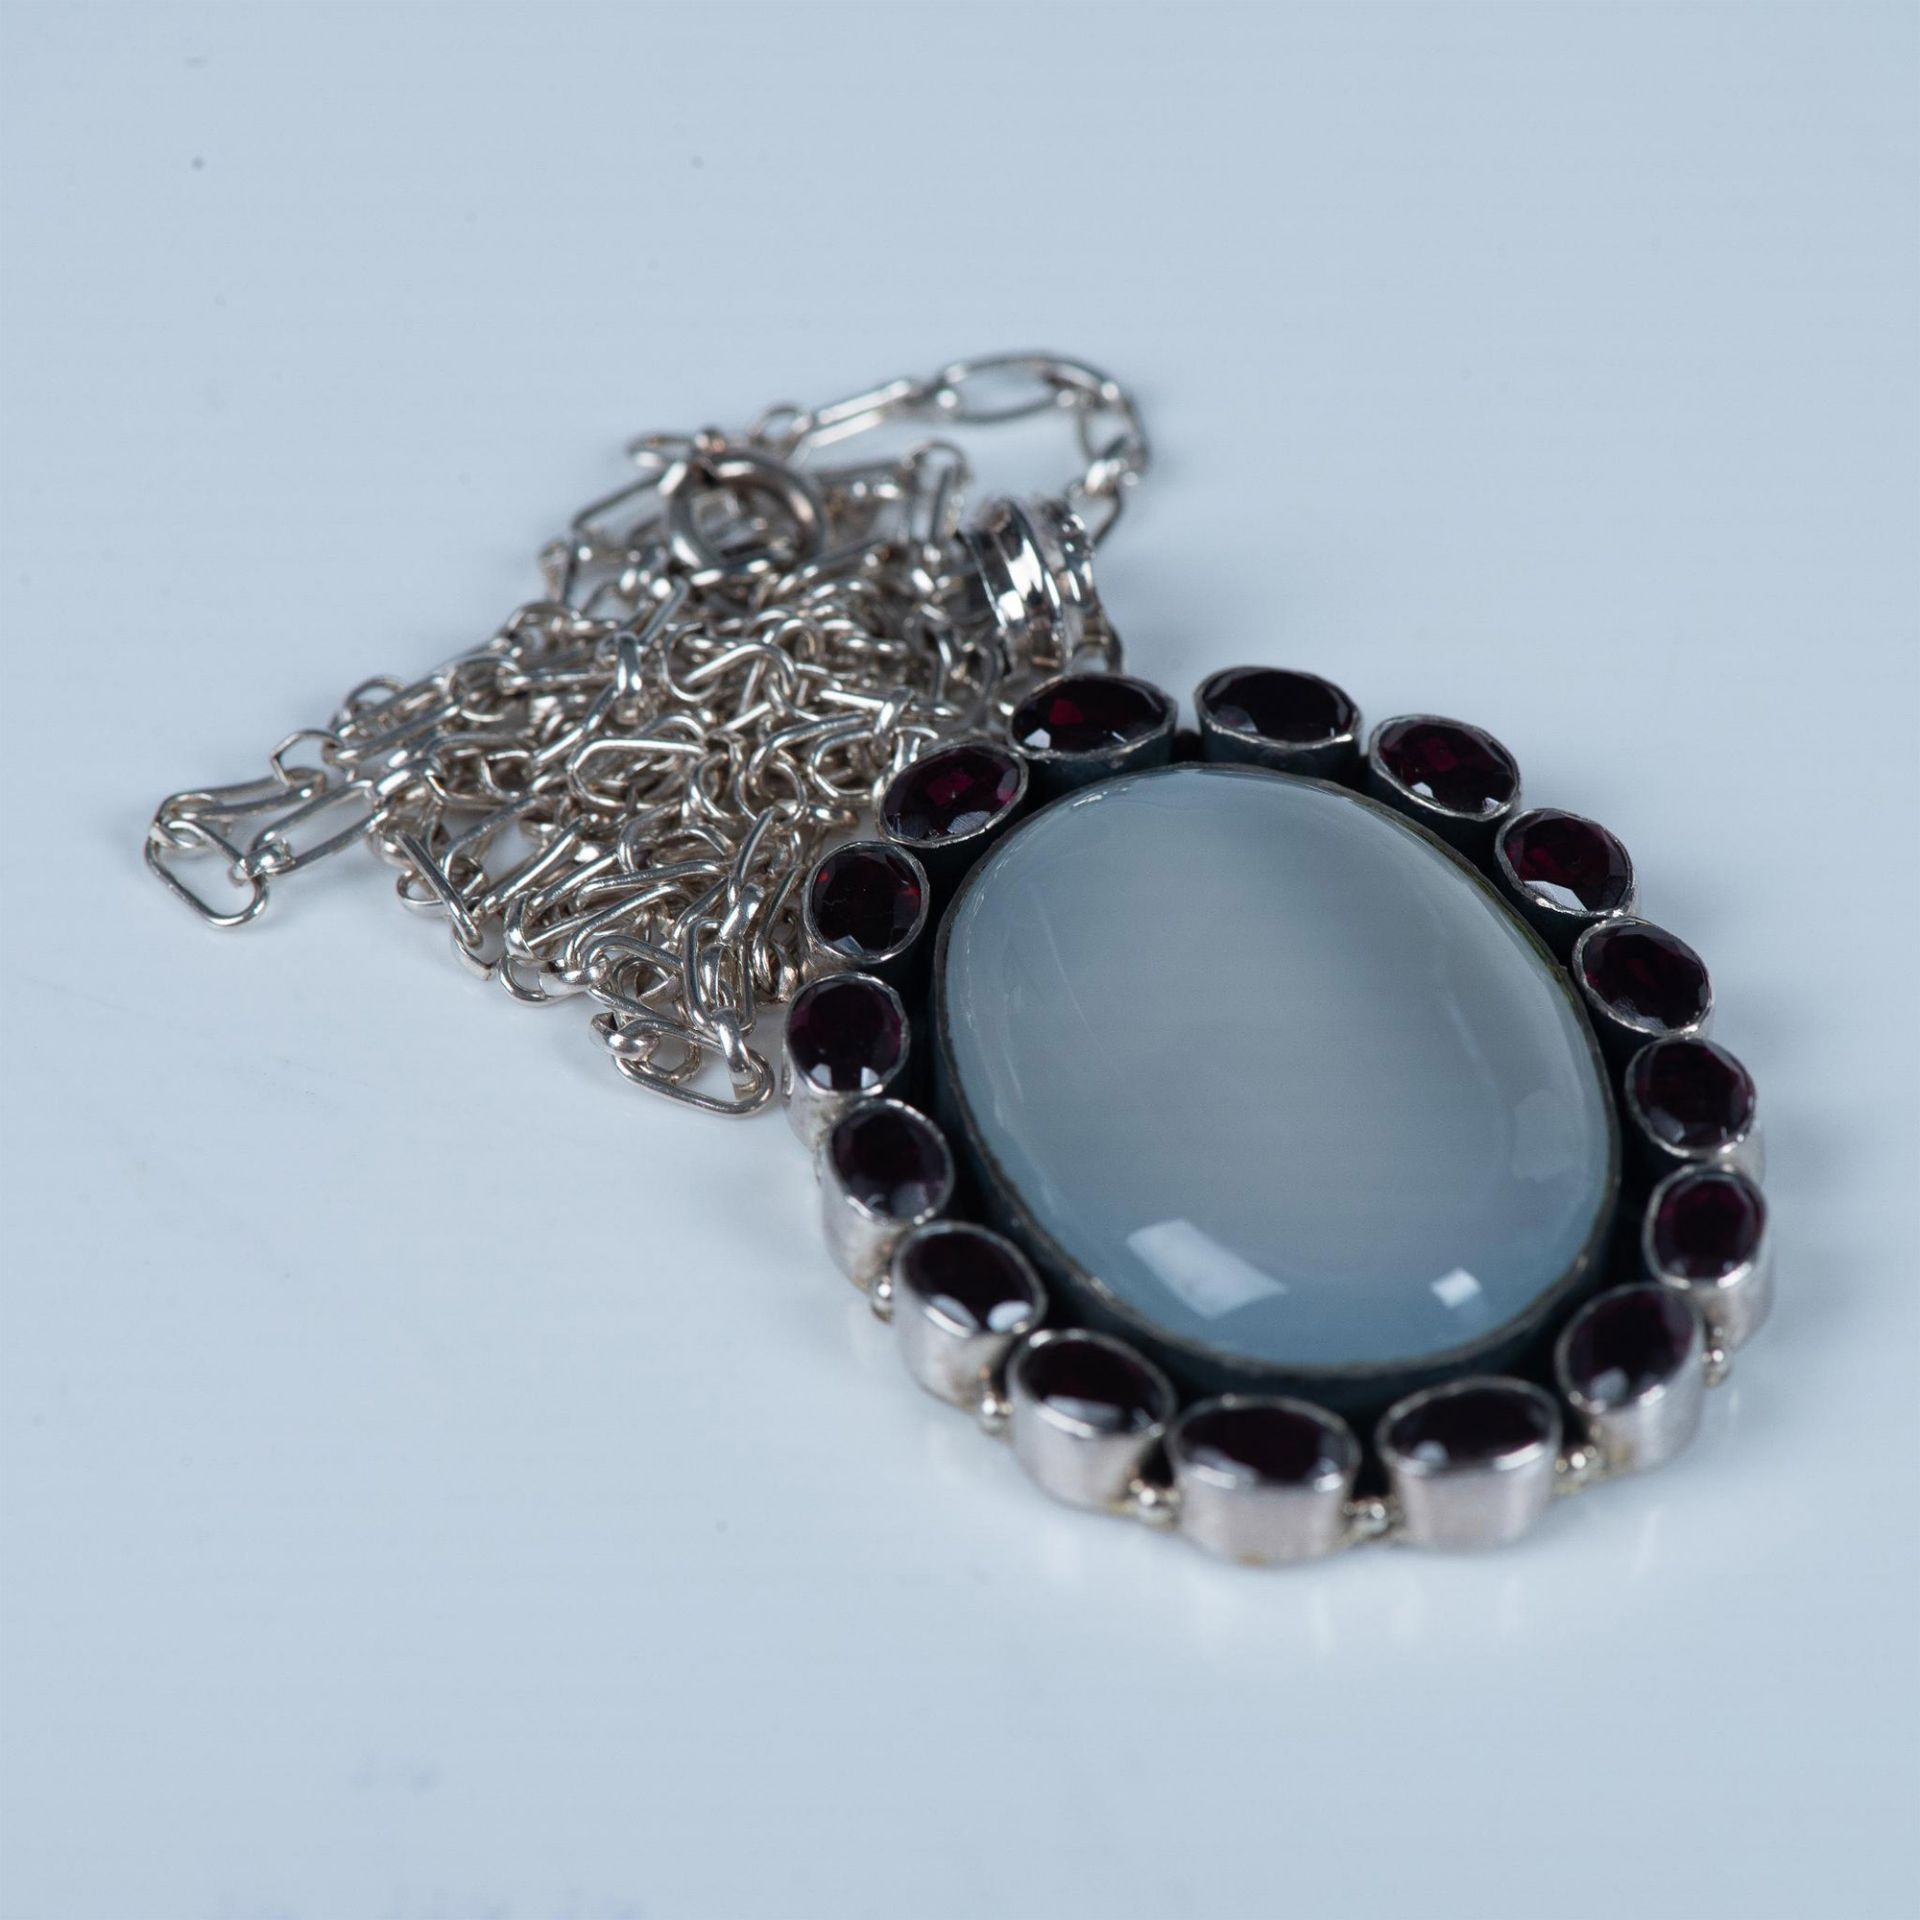 Vintage Sterling Silver, Moonstone & Garnet Pendant Necklace - Image 5 of 7